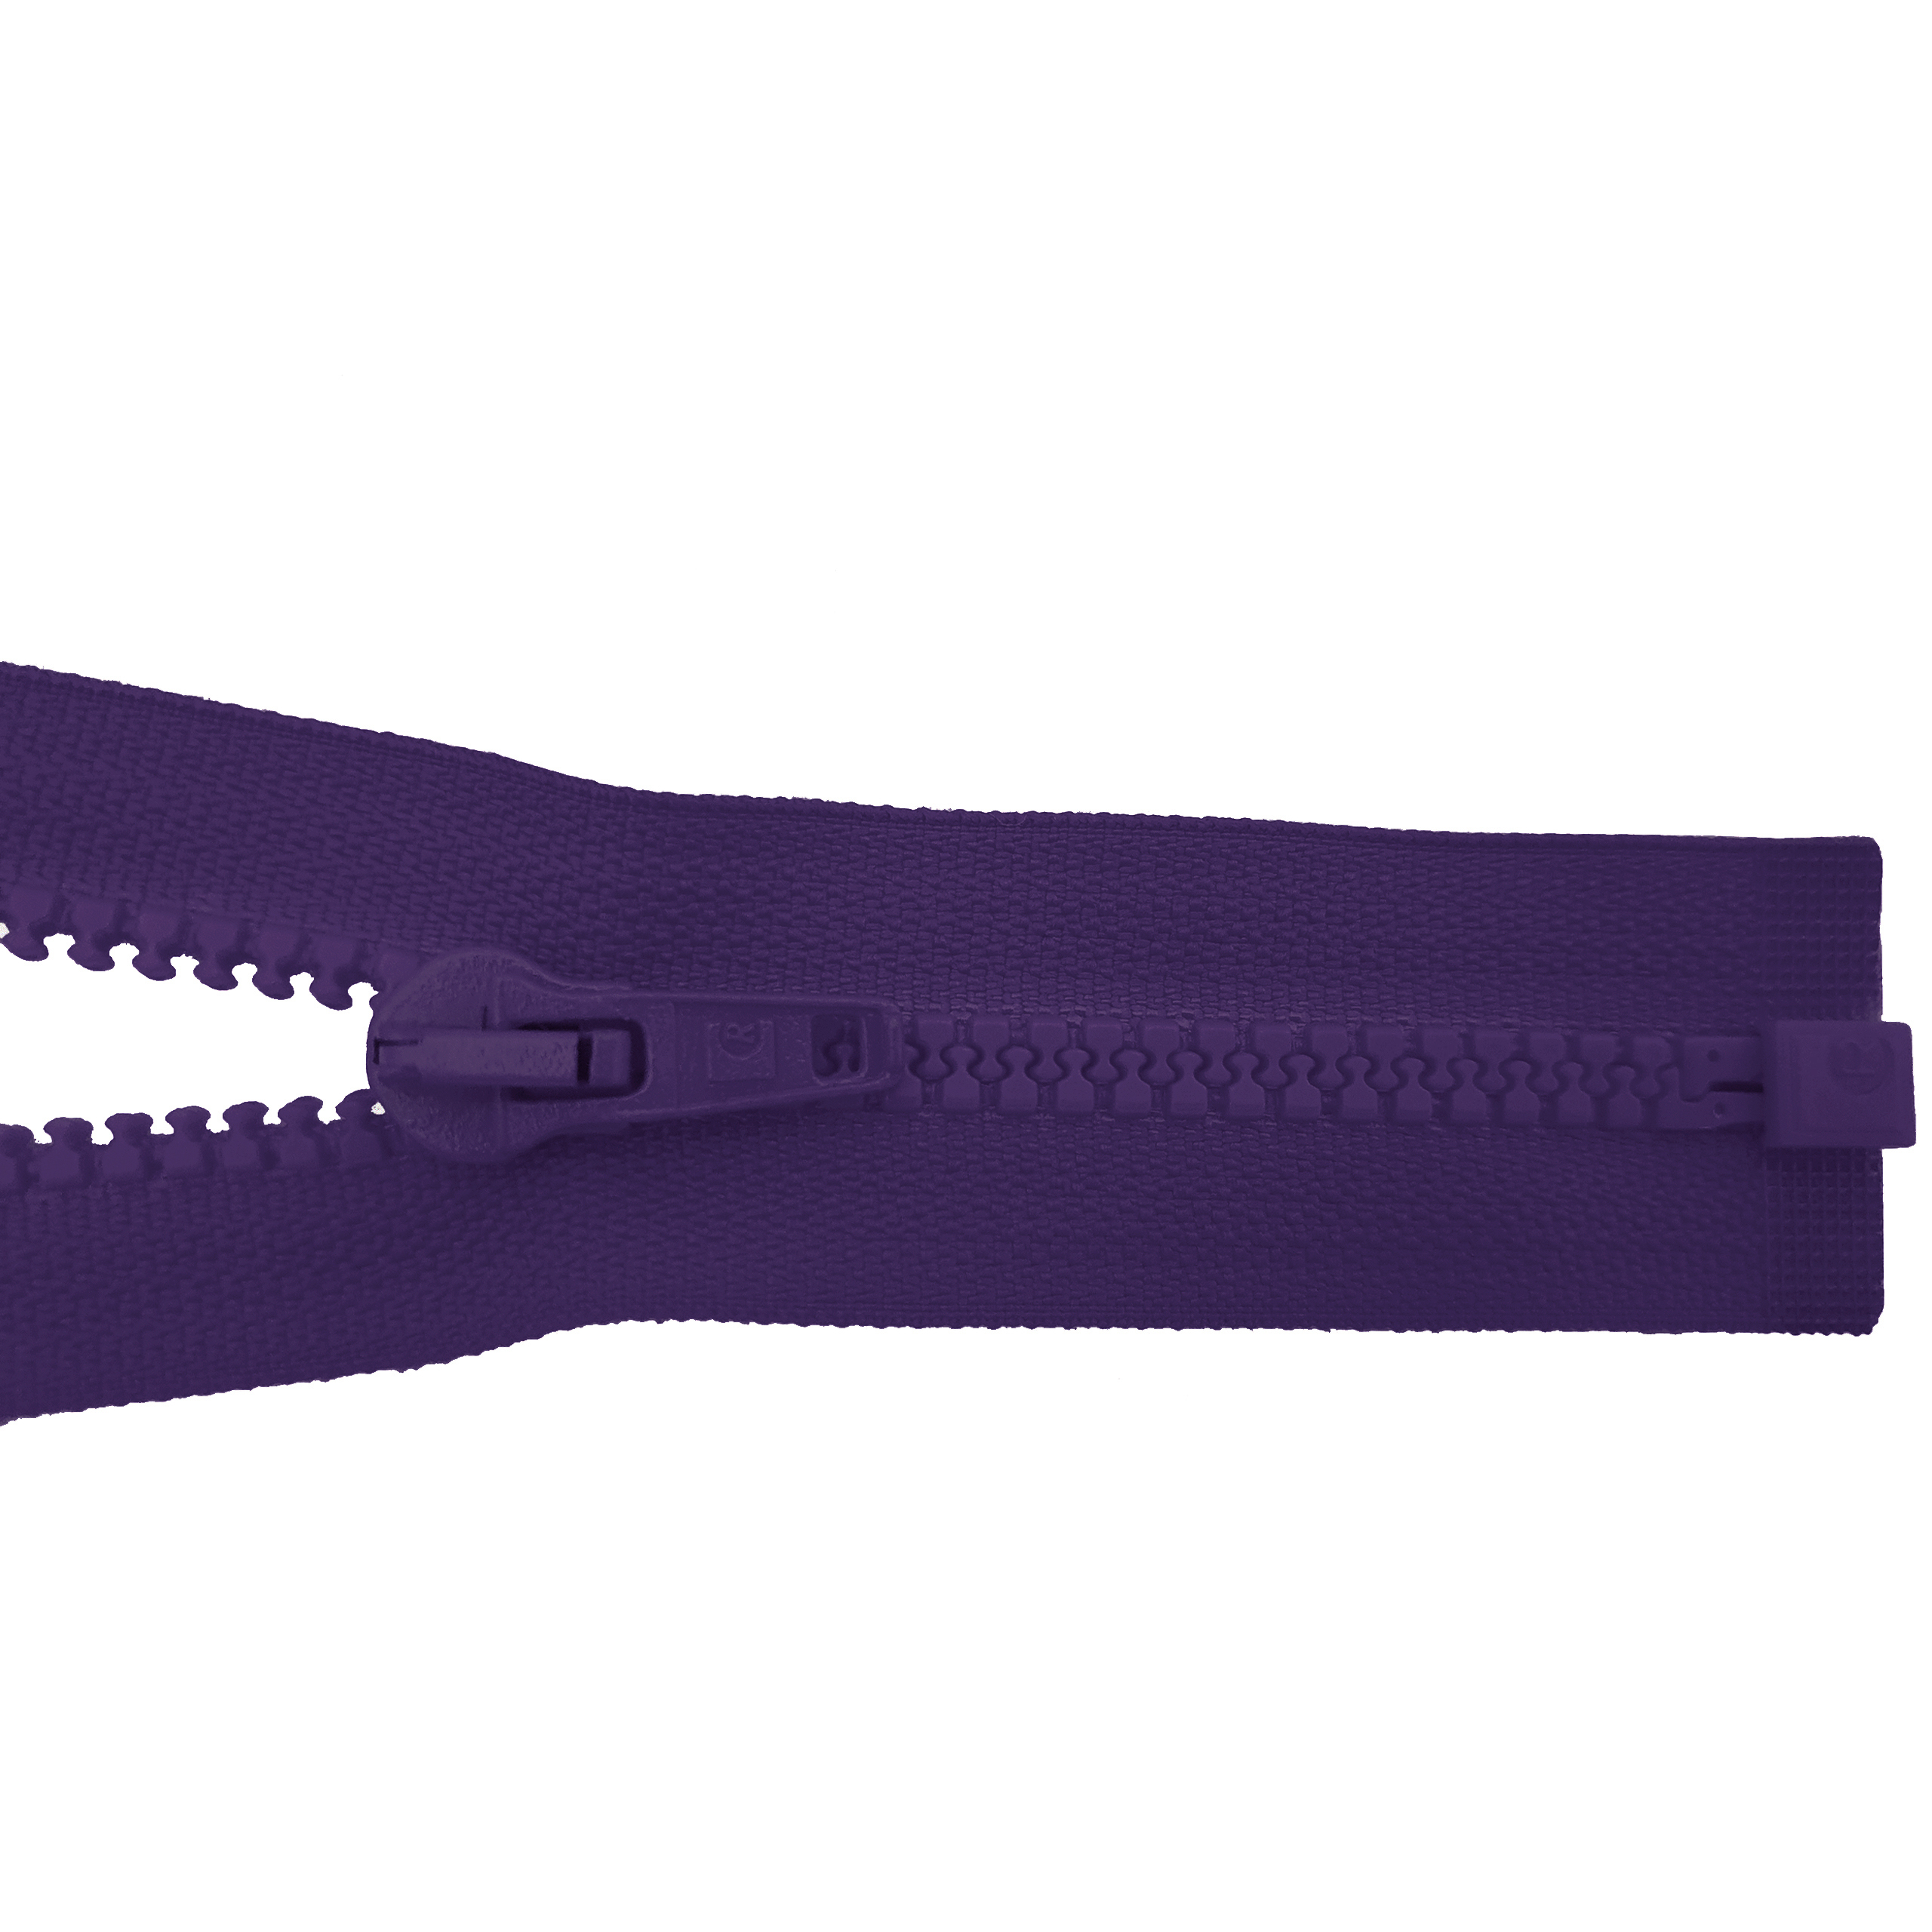 RV 80cm, teilbar, Kstoff Zähne breit, violett